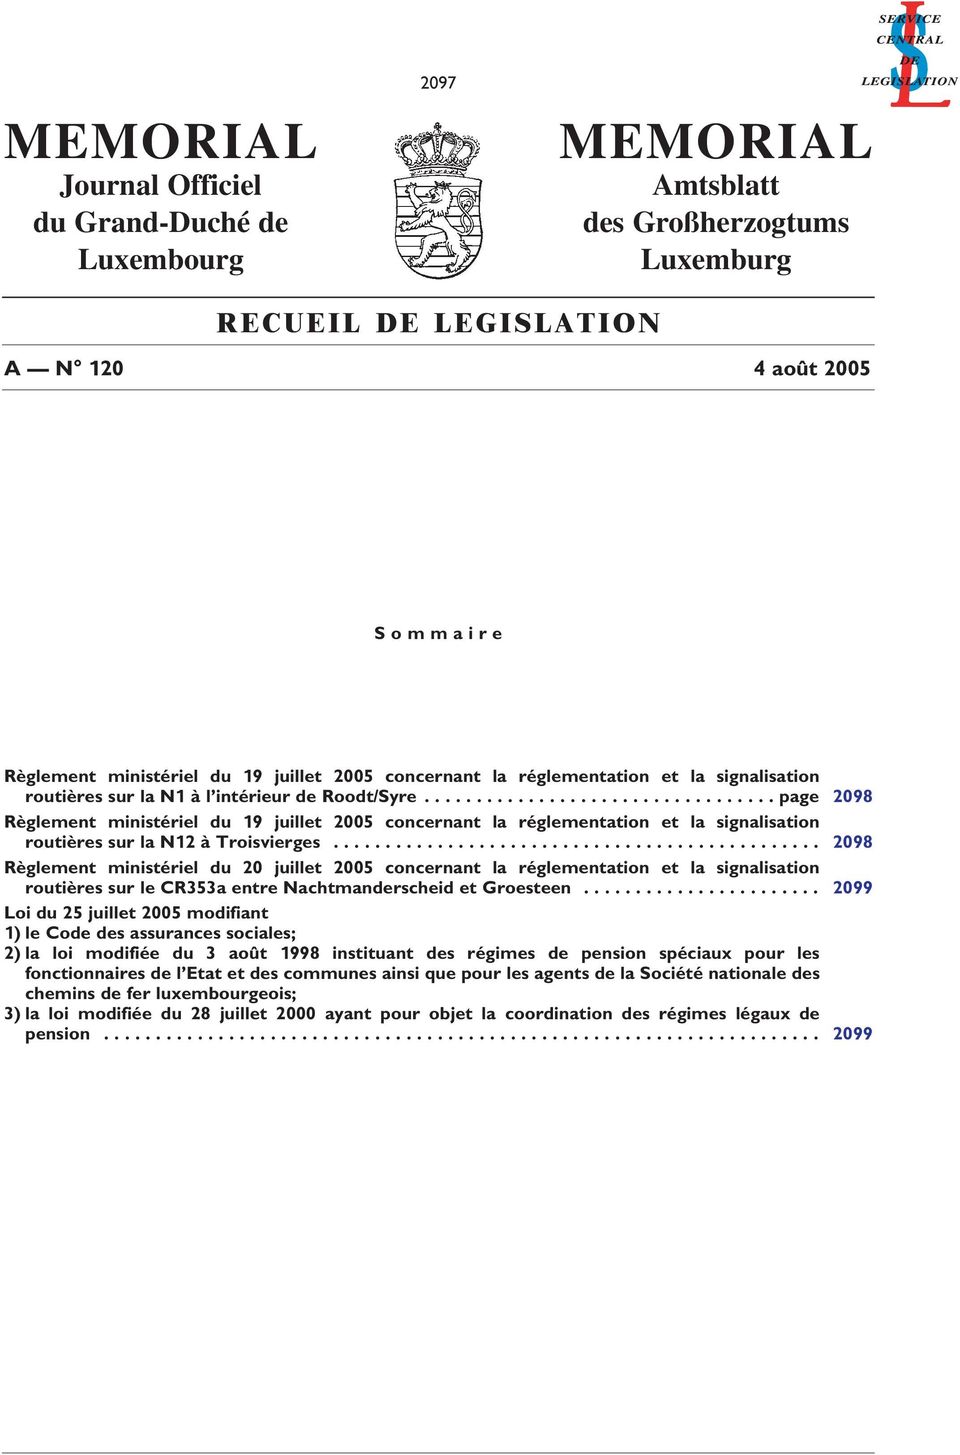 ................................. page 2098 Règlement ministériel du 19 juillet 2005 concernant la réglementation et la signalisation routières sur la N12 à Troisvierges.